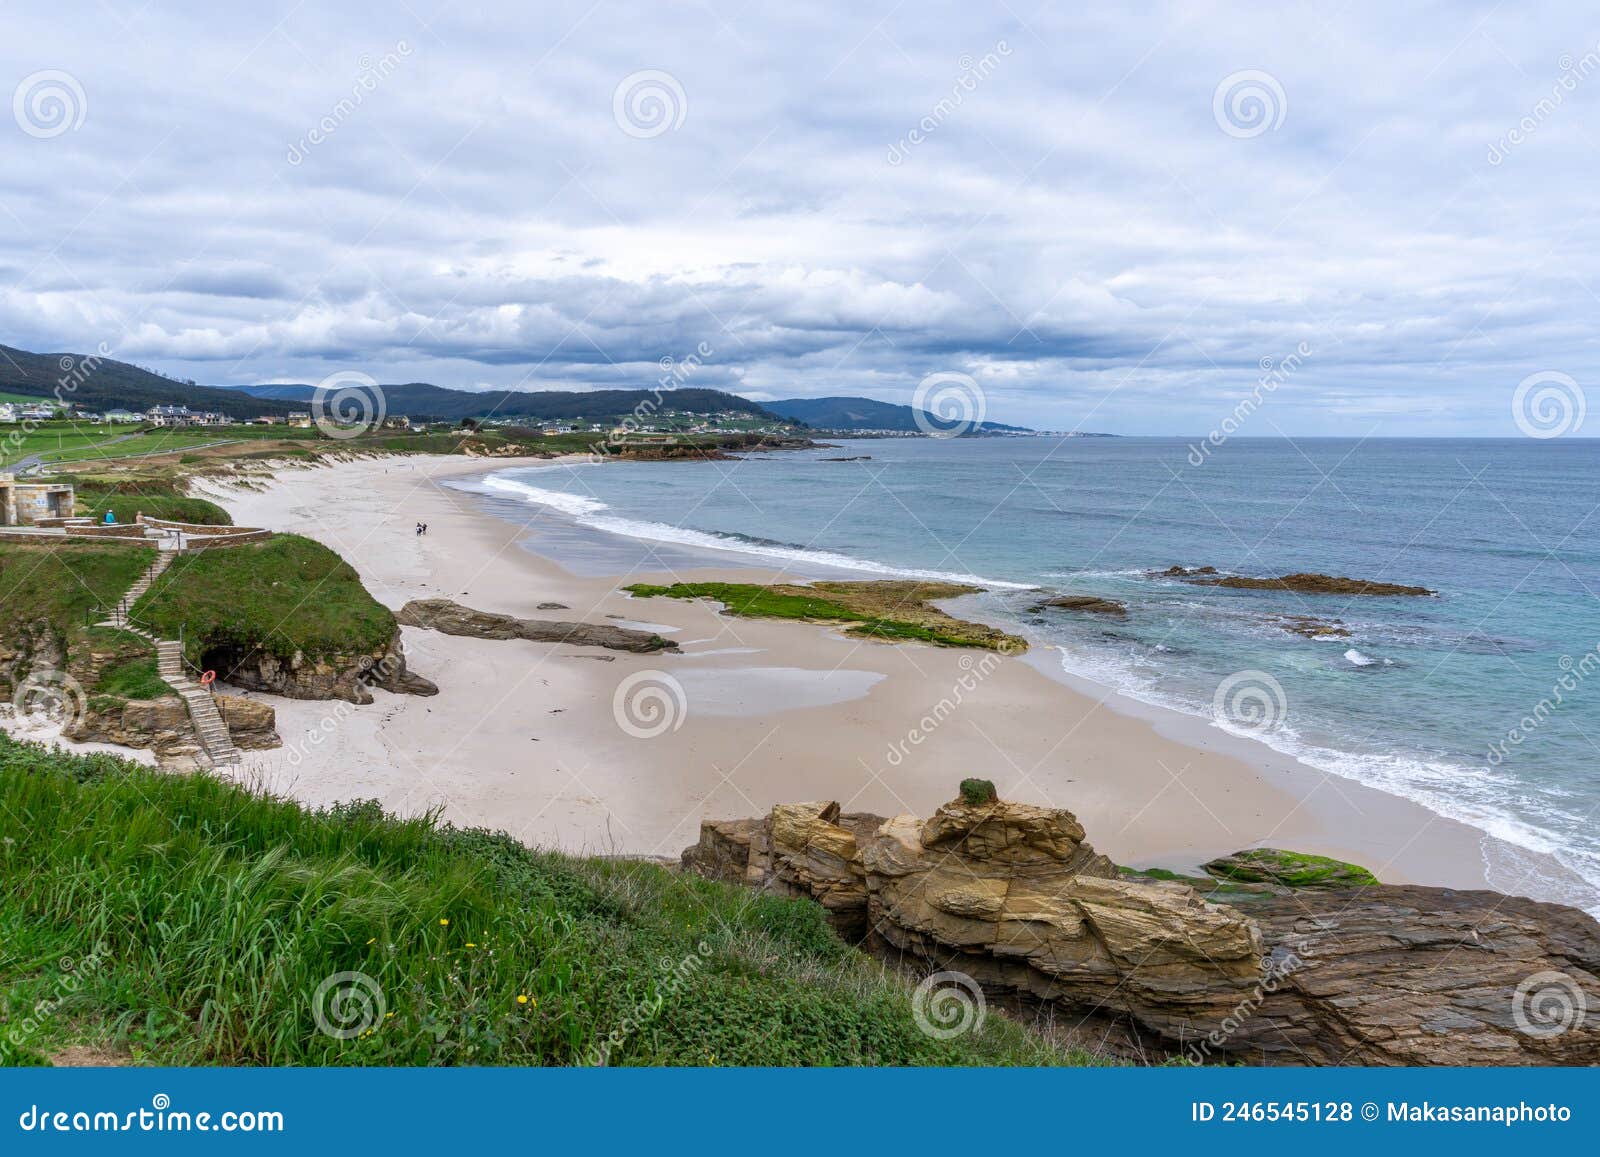 view of the playa llas near foz in galicia